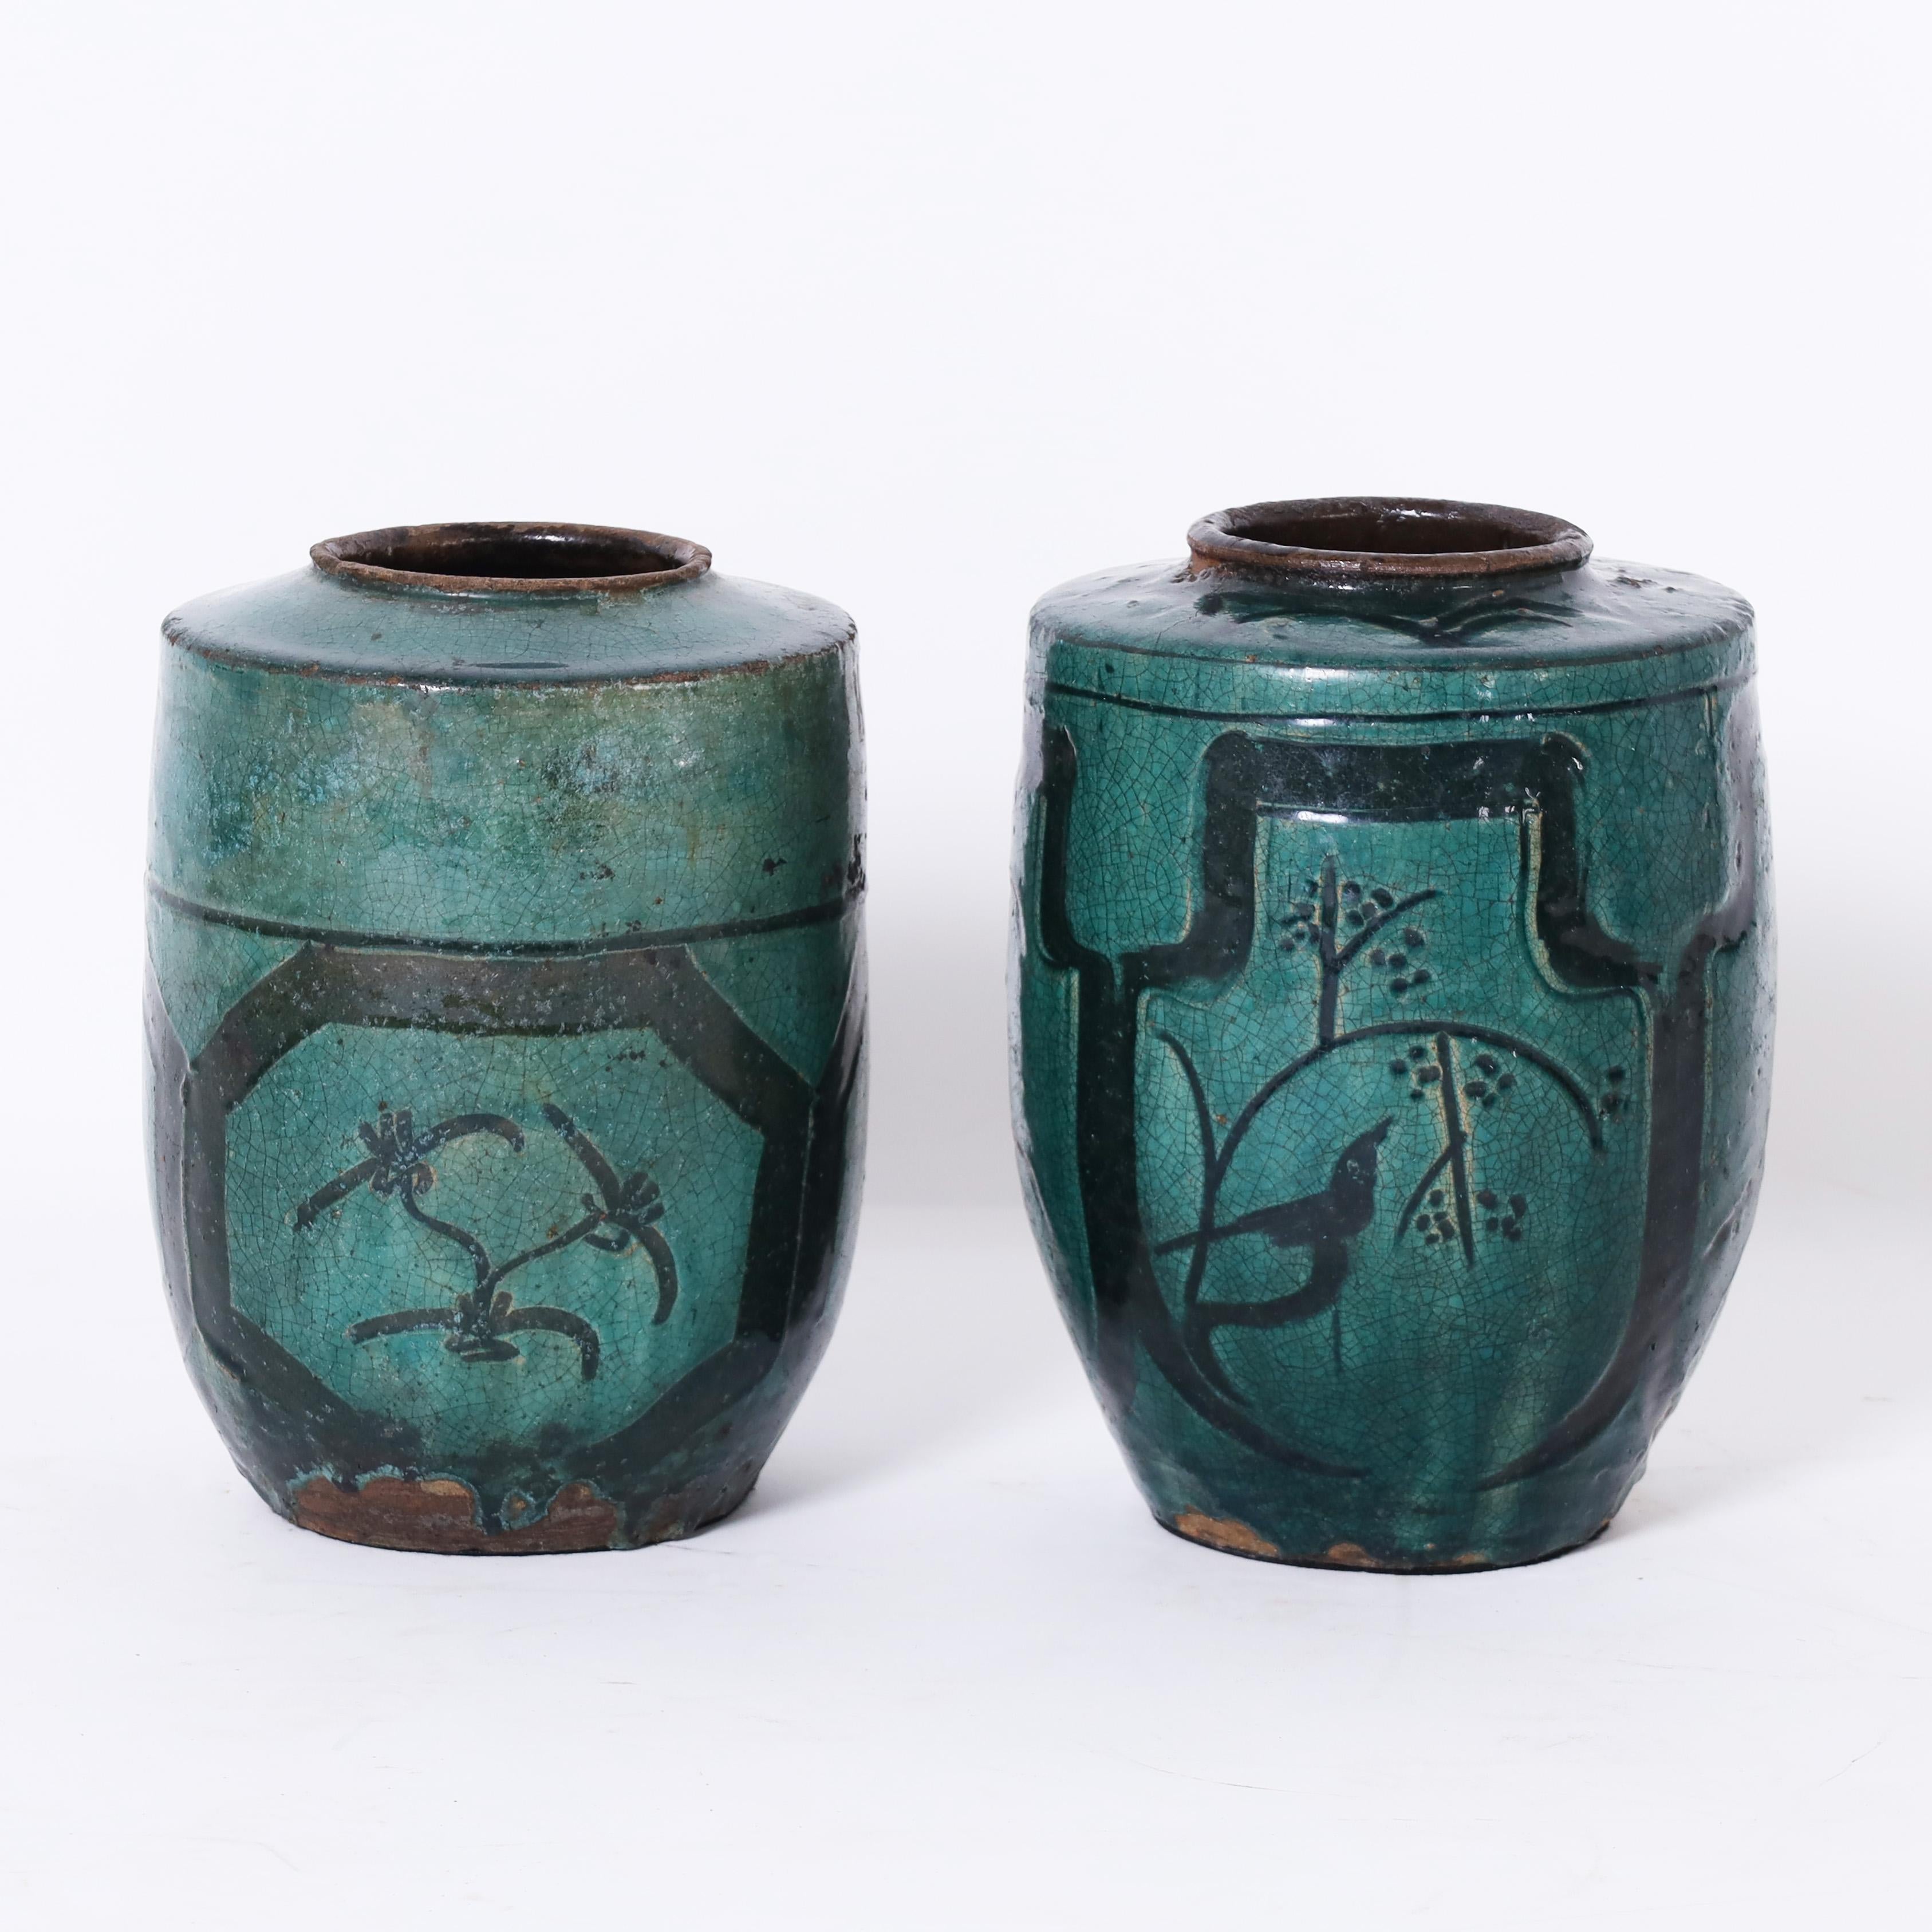 Rare et inhabituelle paire de vases persans du XVIIIe siècle fabriqués à la main en terre cuite et décorés d'oiseaux, de fleurs et d'un motif asiatique non conventionnel, puis émaillés, aujourd'hui craquelés et vieillis à la perfection.